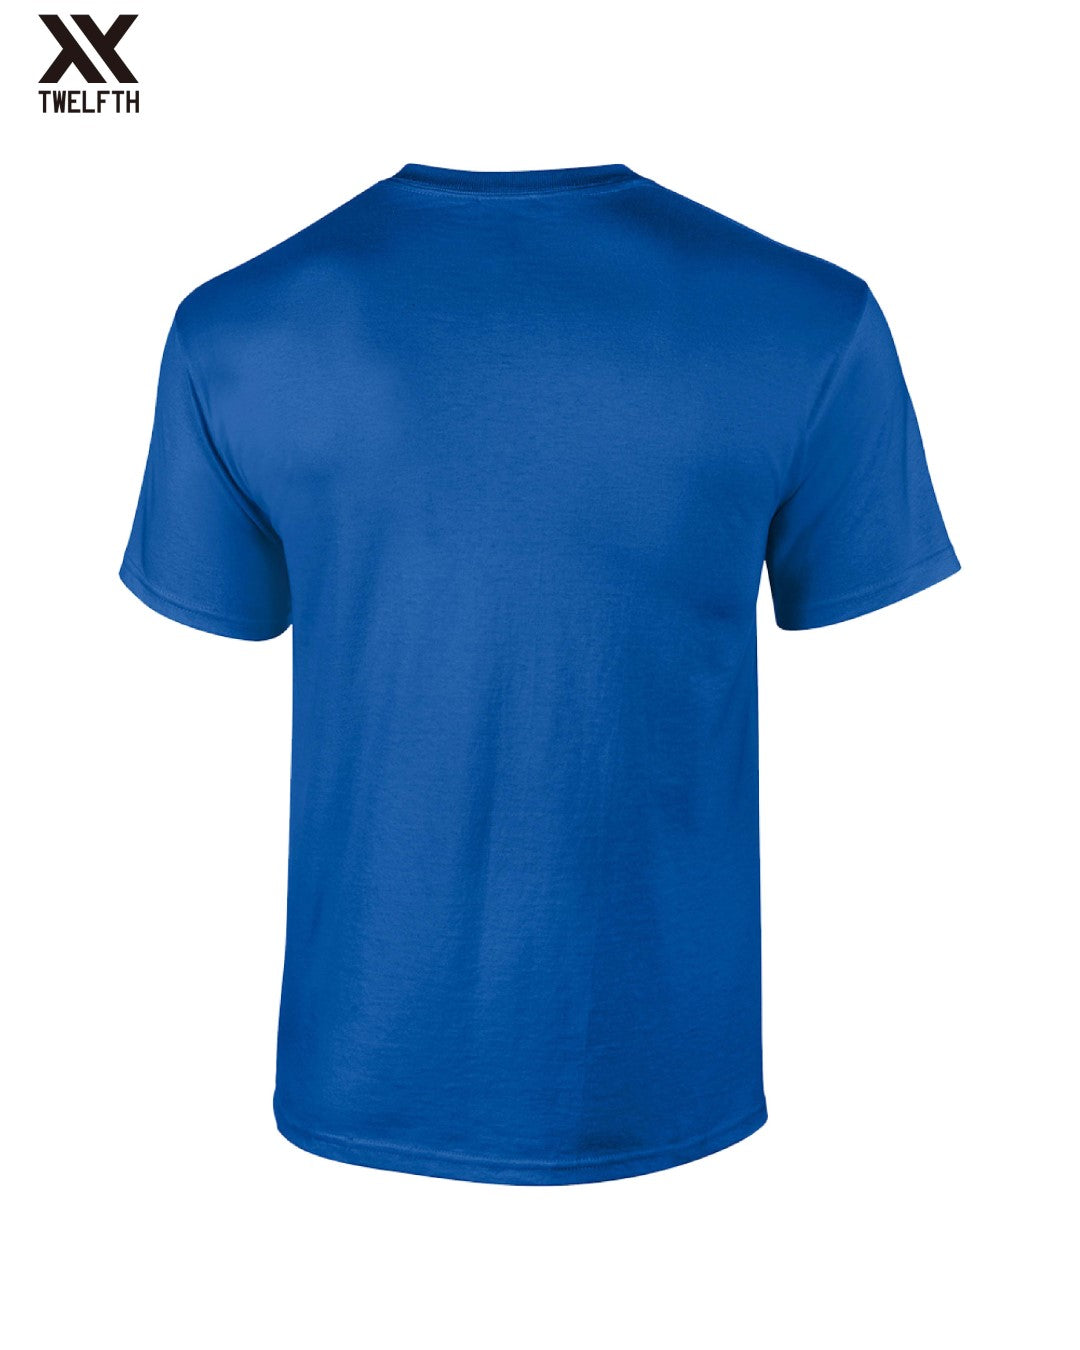 Schalke 04 Crest T-Shirt - Mens